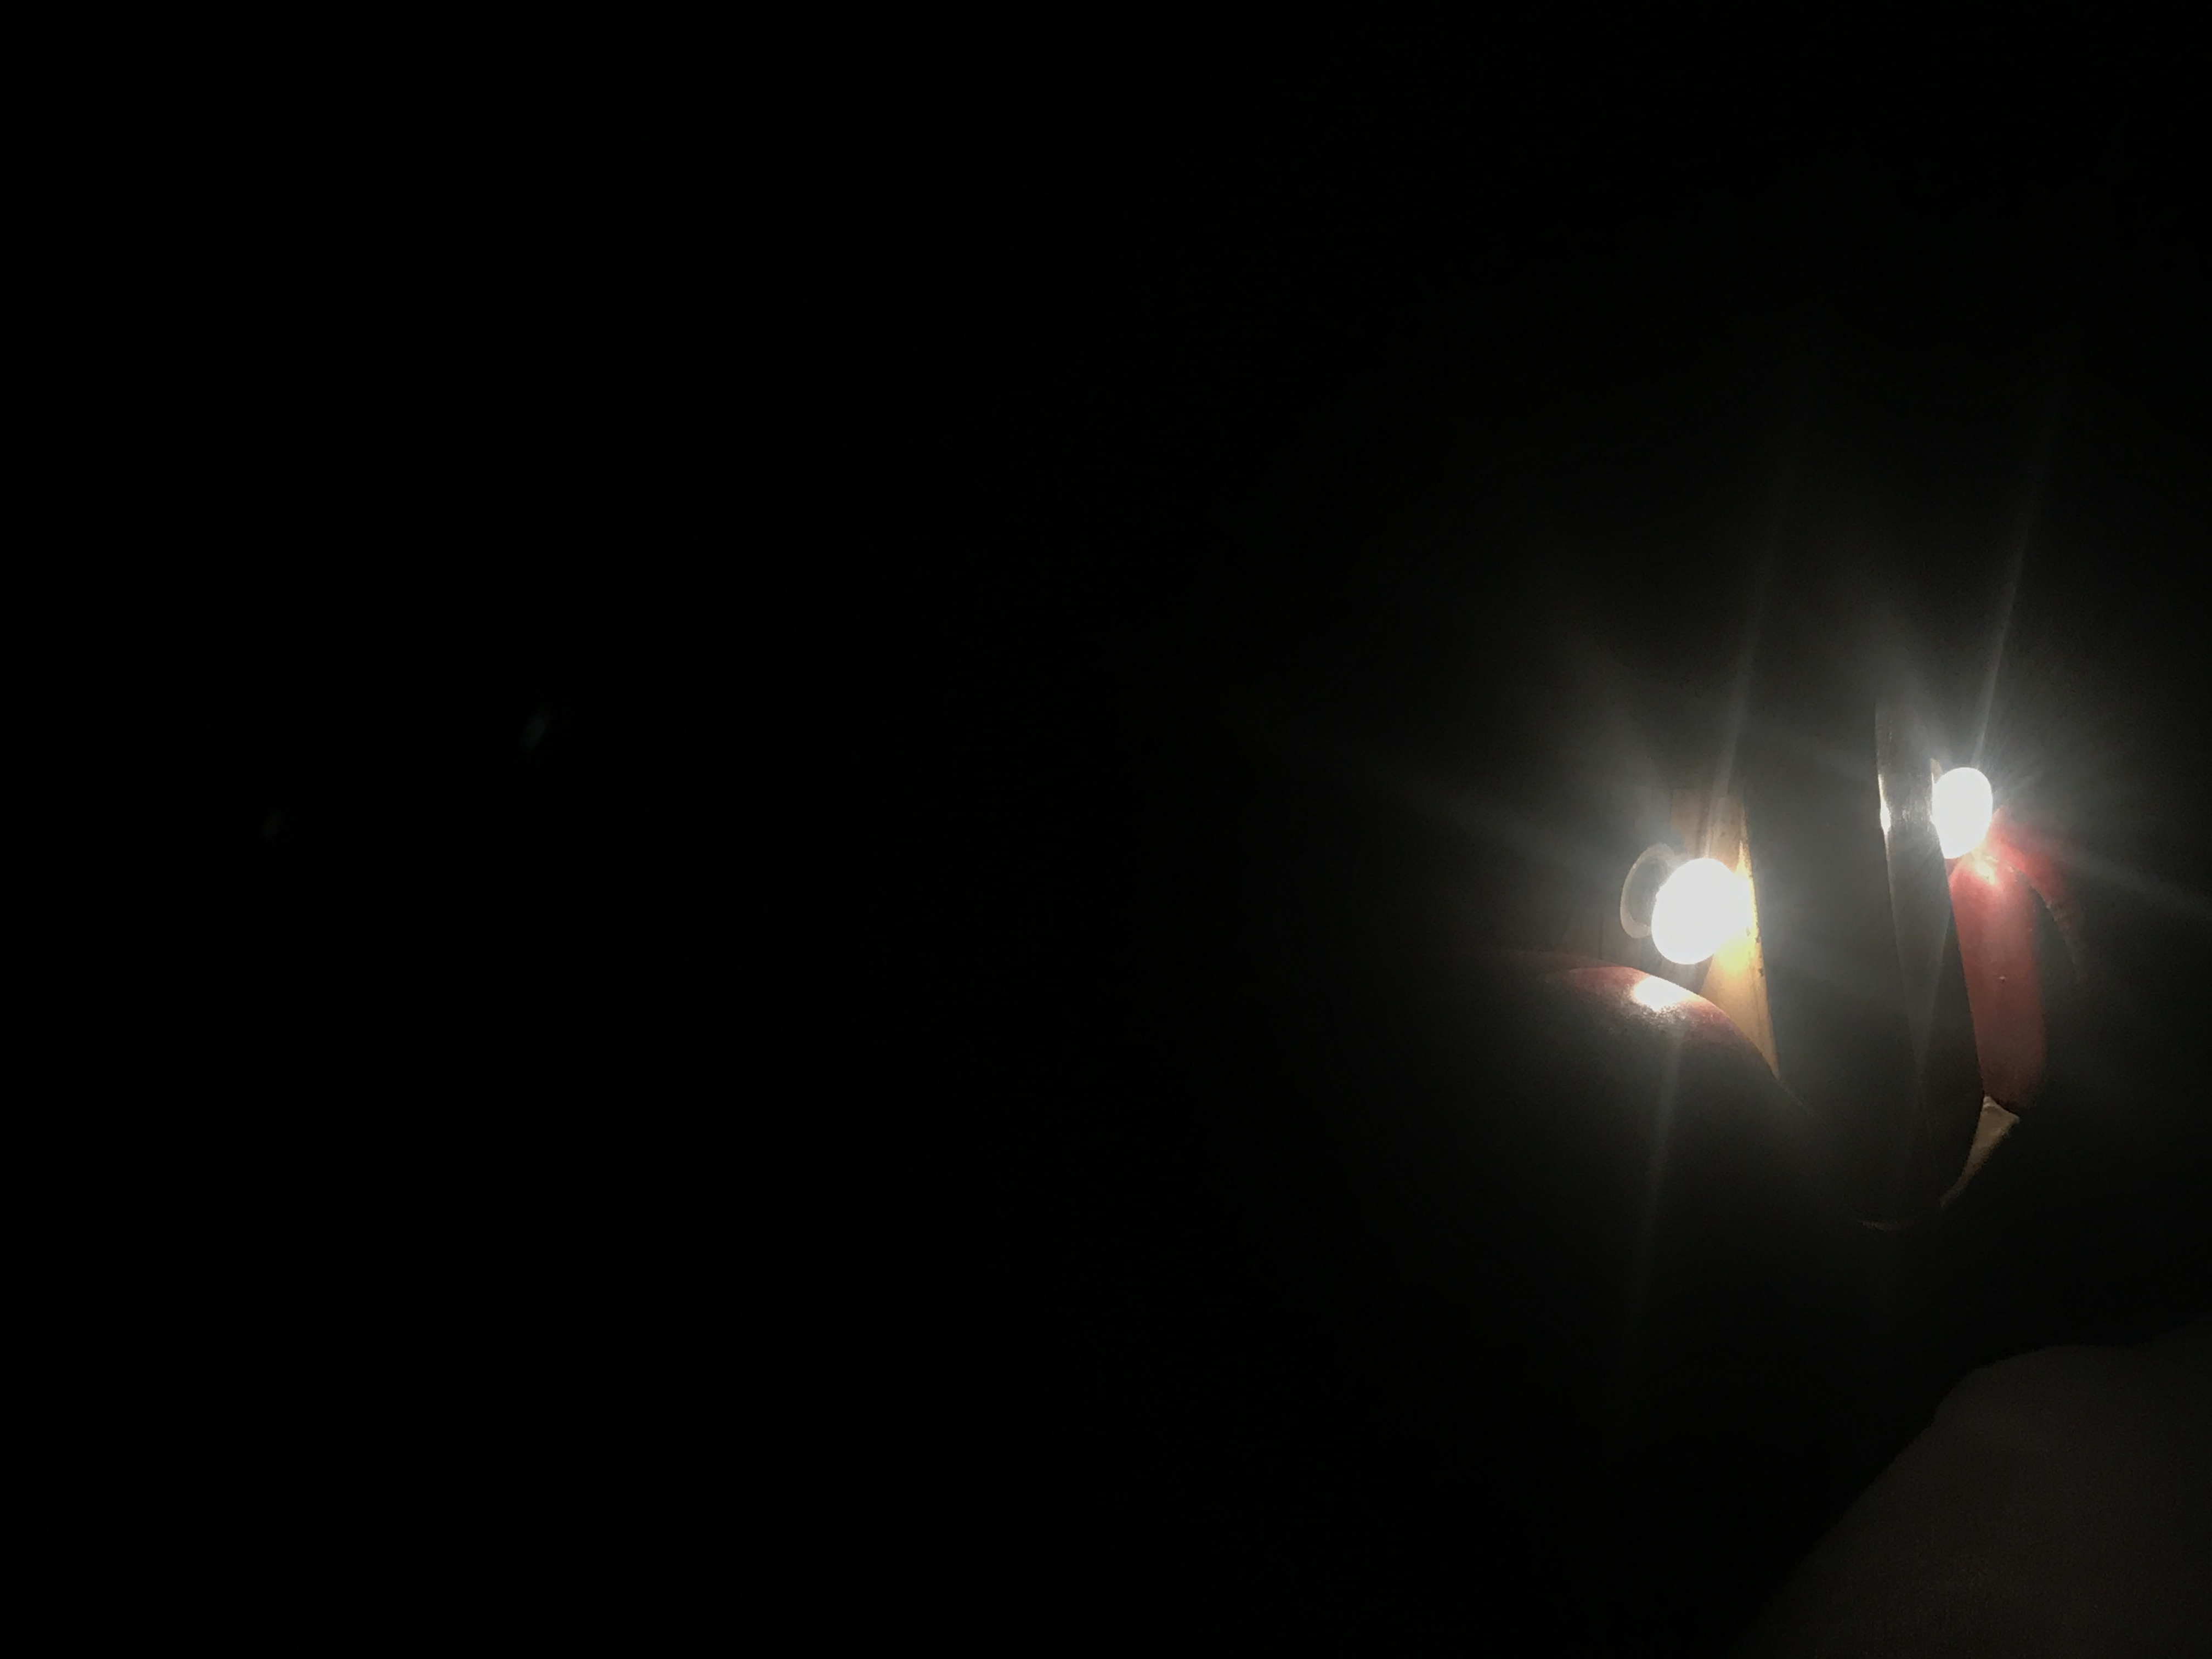 Una auto Ingap che sfreccia nella notte a luci accese... - foto di Giovanfranco di Giunta - COMPRO GIOCATTOLI